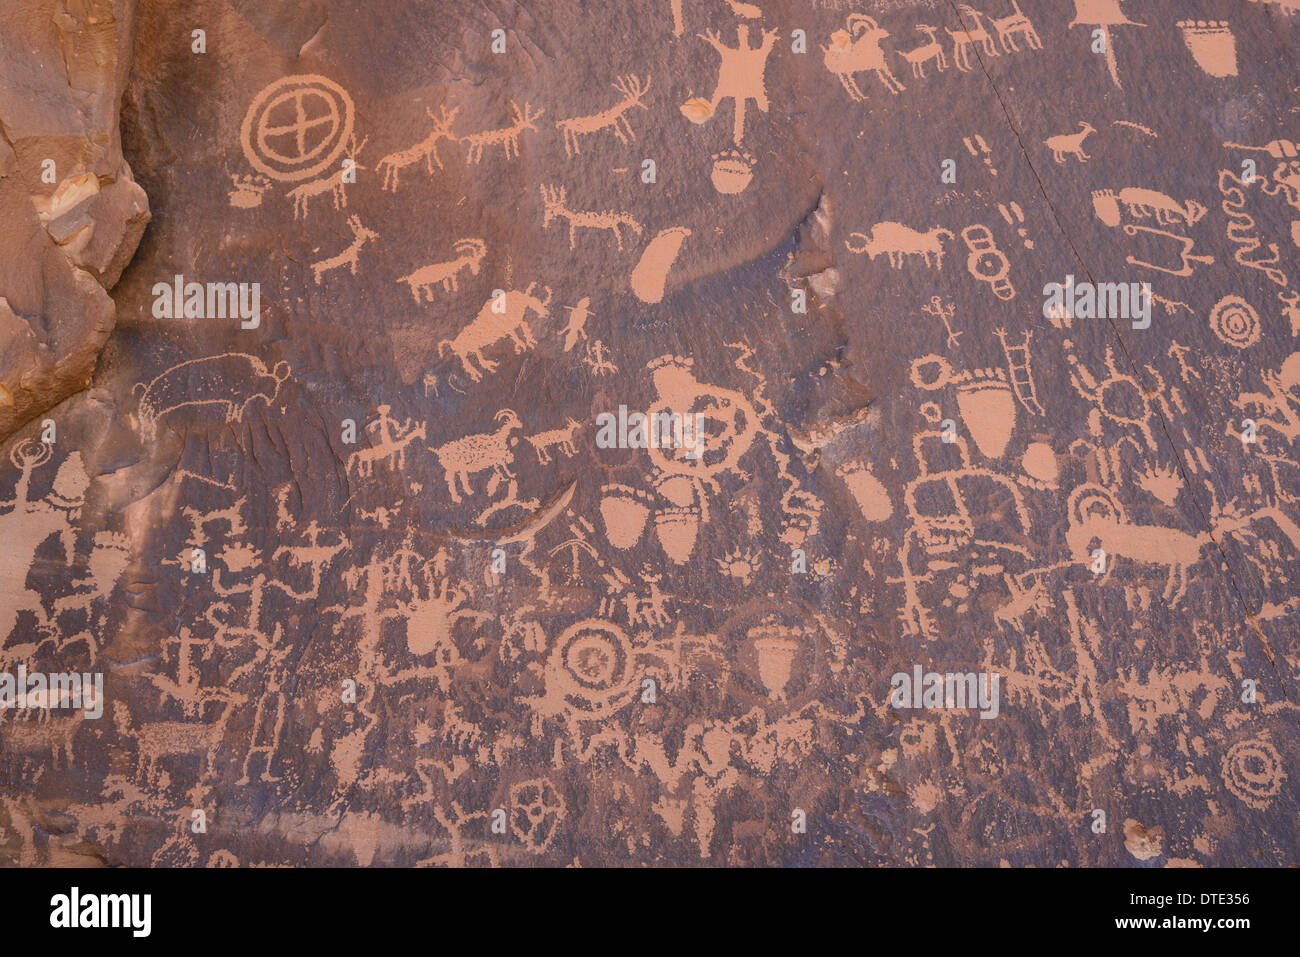 Indiana antica arte rupestre, petroglifi Newspaper Rock, in prossimità della sezione di aghi del Parco Nazionale di Canyonlands, Utah, Stati Uniti d'America Foto Stock